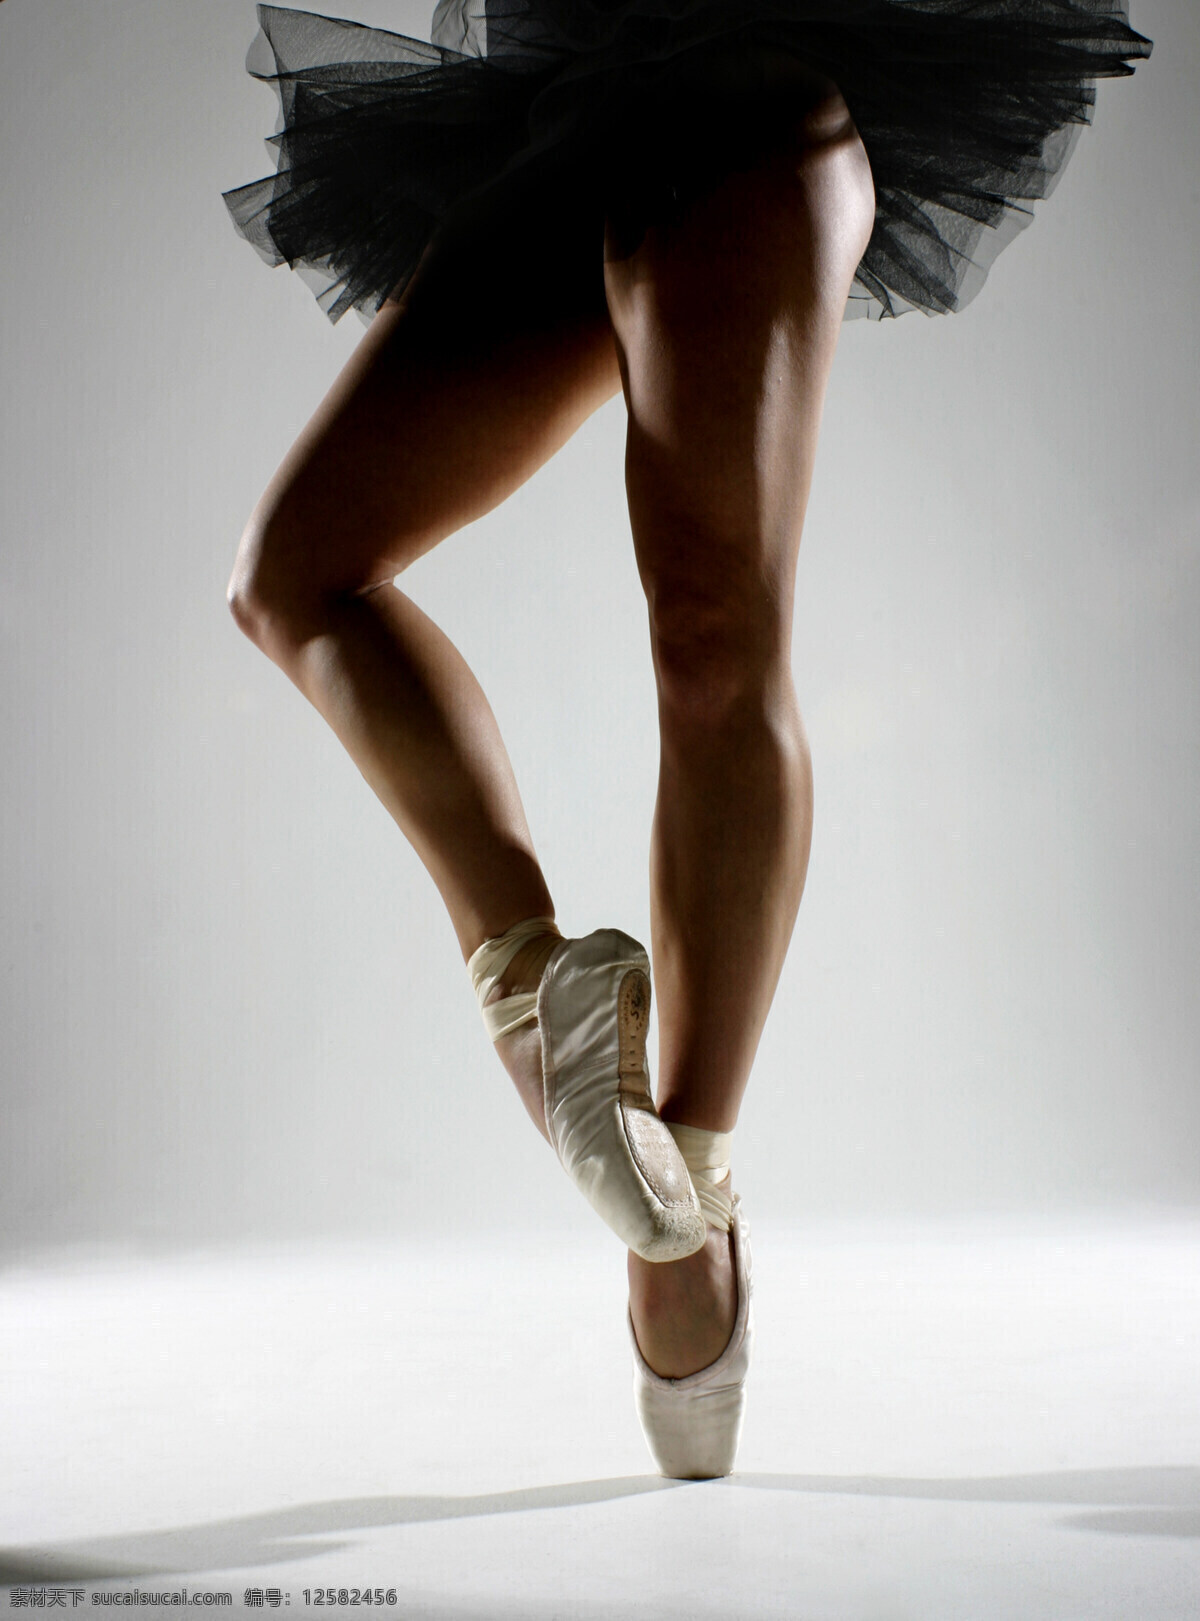 芭蕾舞 演员 外国女性 女人 美女 舞蹈演员 美女图片 人物图片